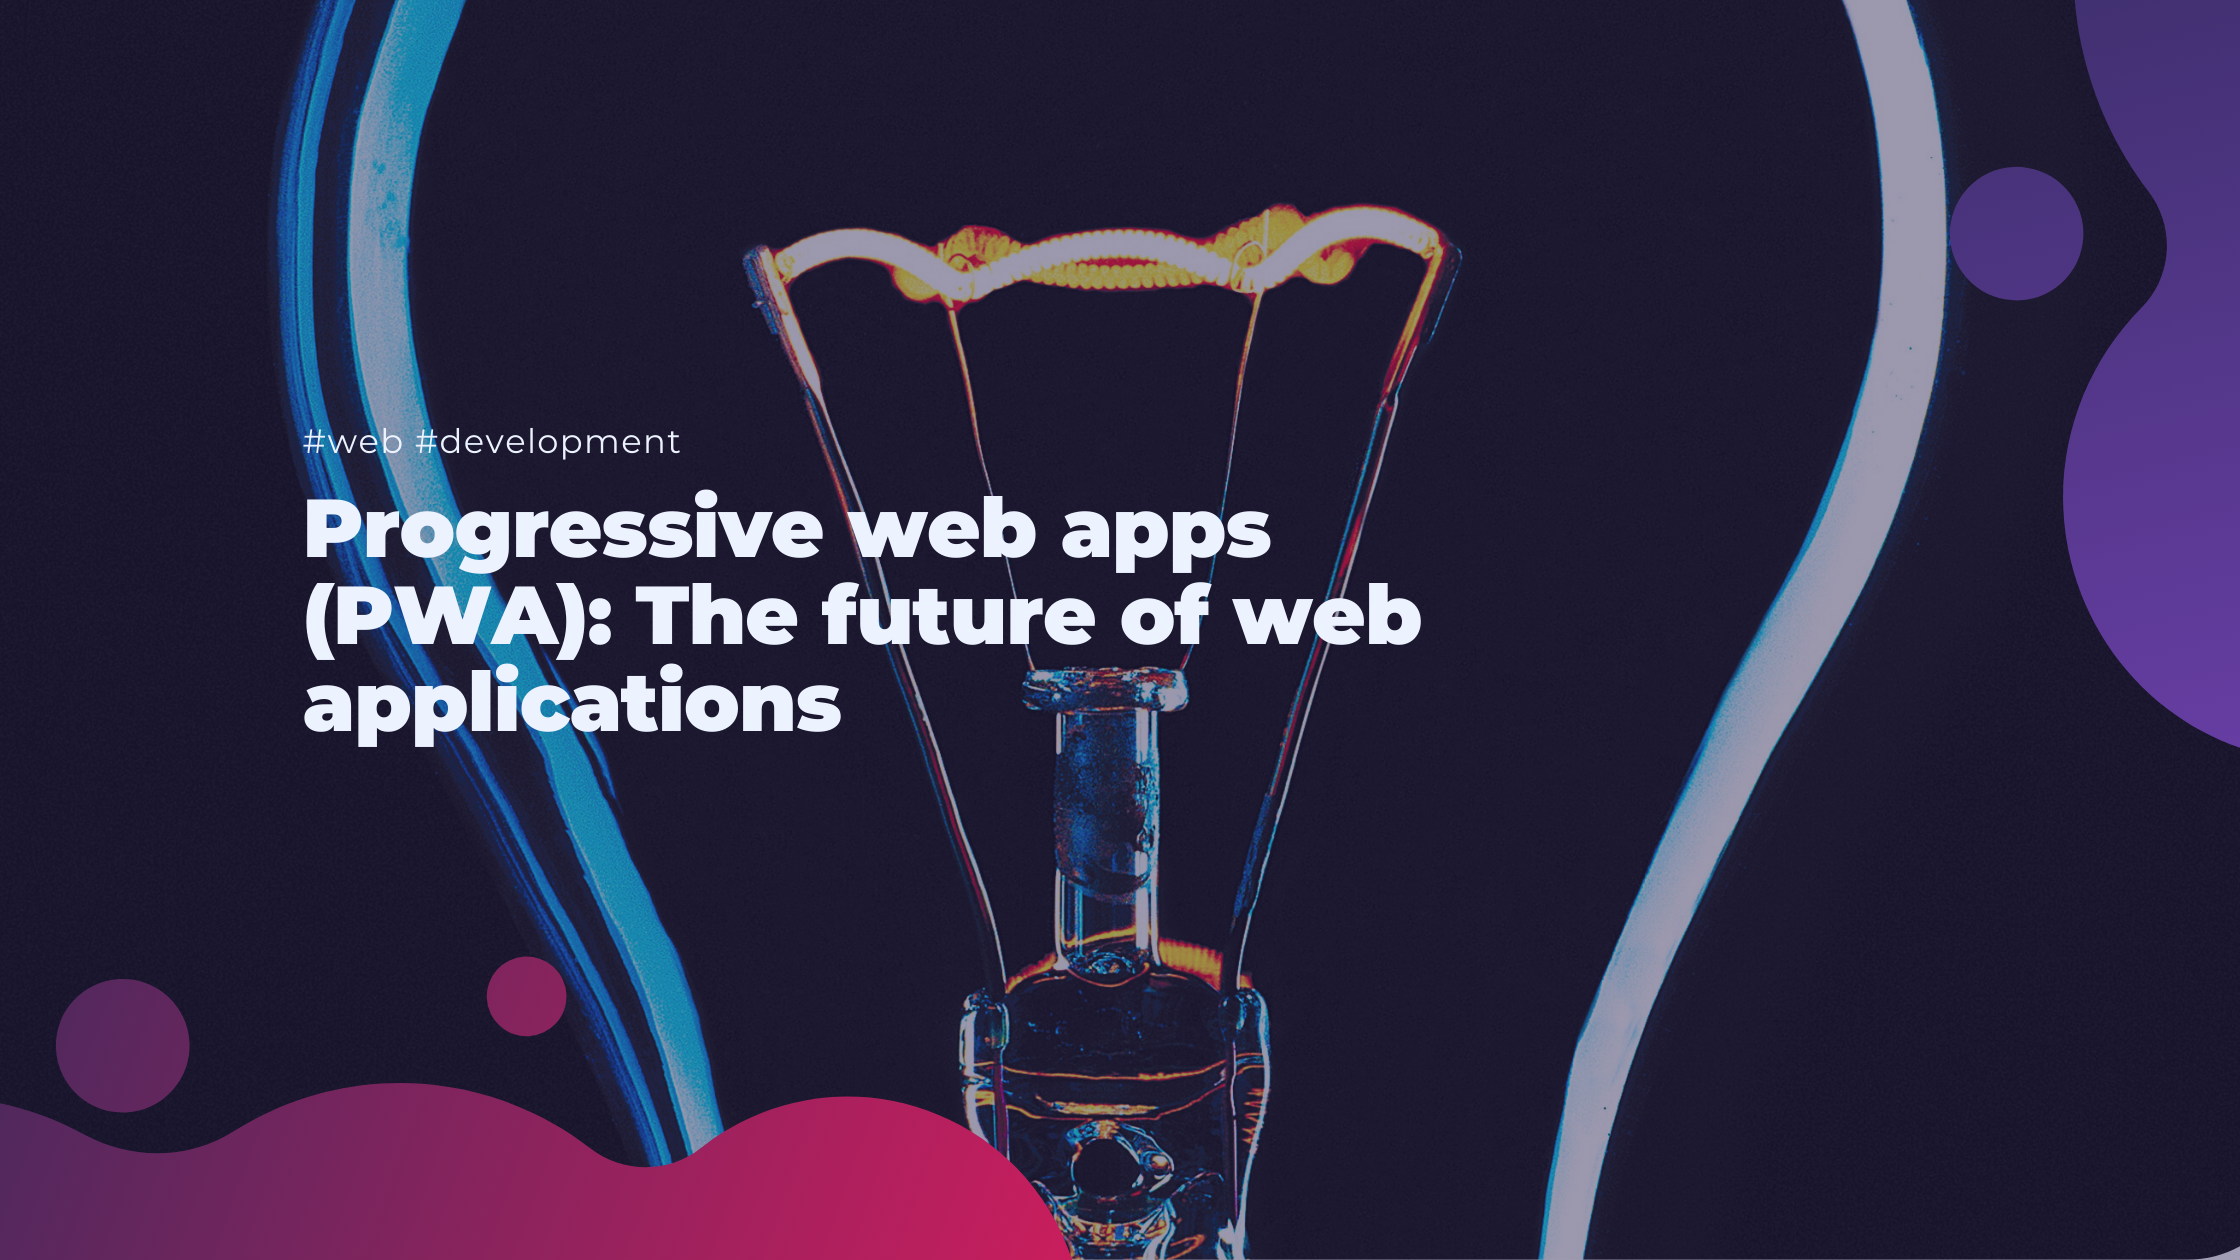 Progressive web apps (PWA): The future of web applications